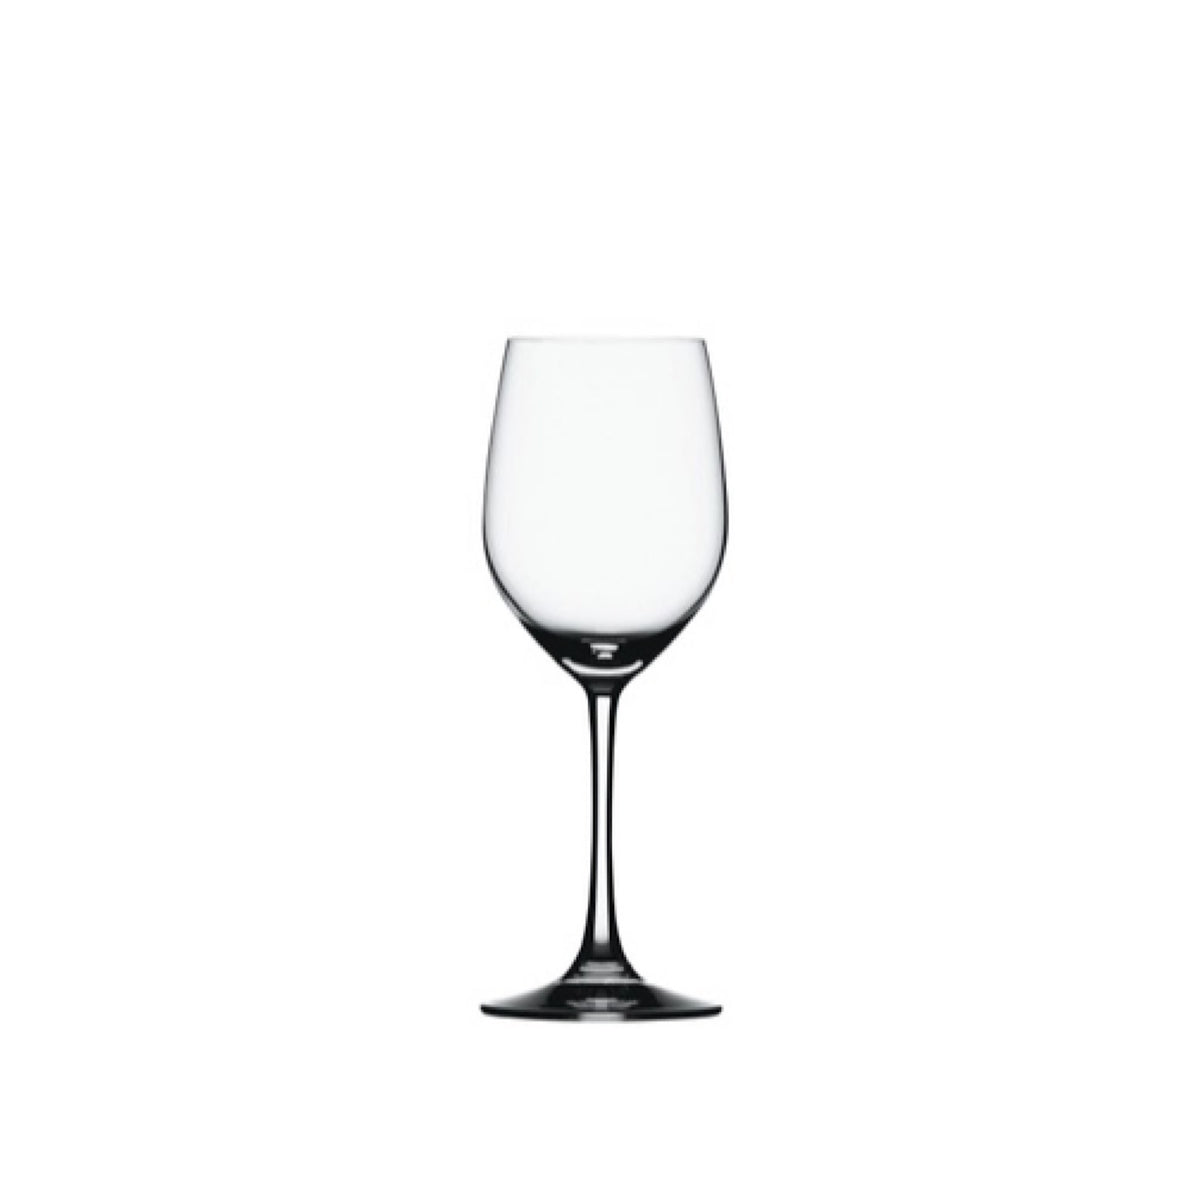 Vino Grande White Wine Glasses, Set of 4